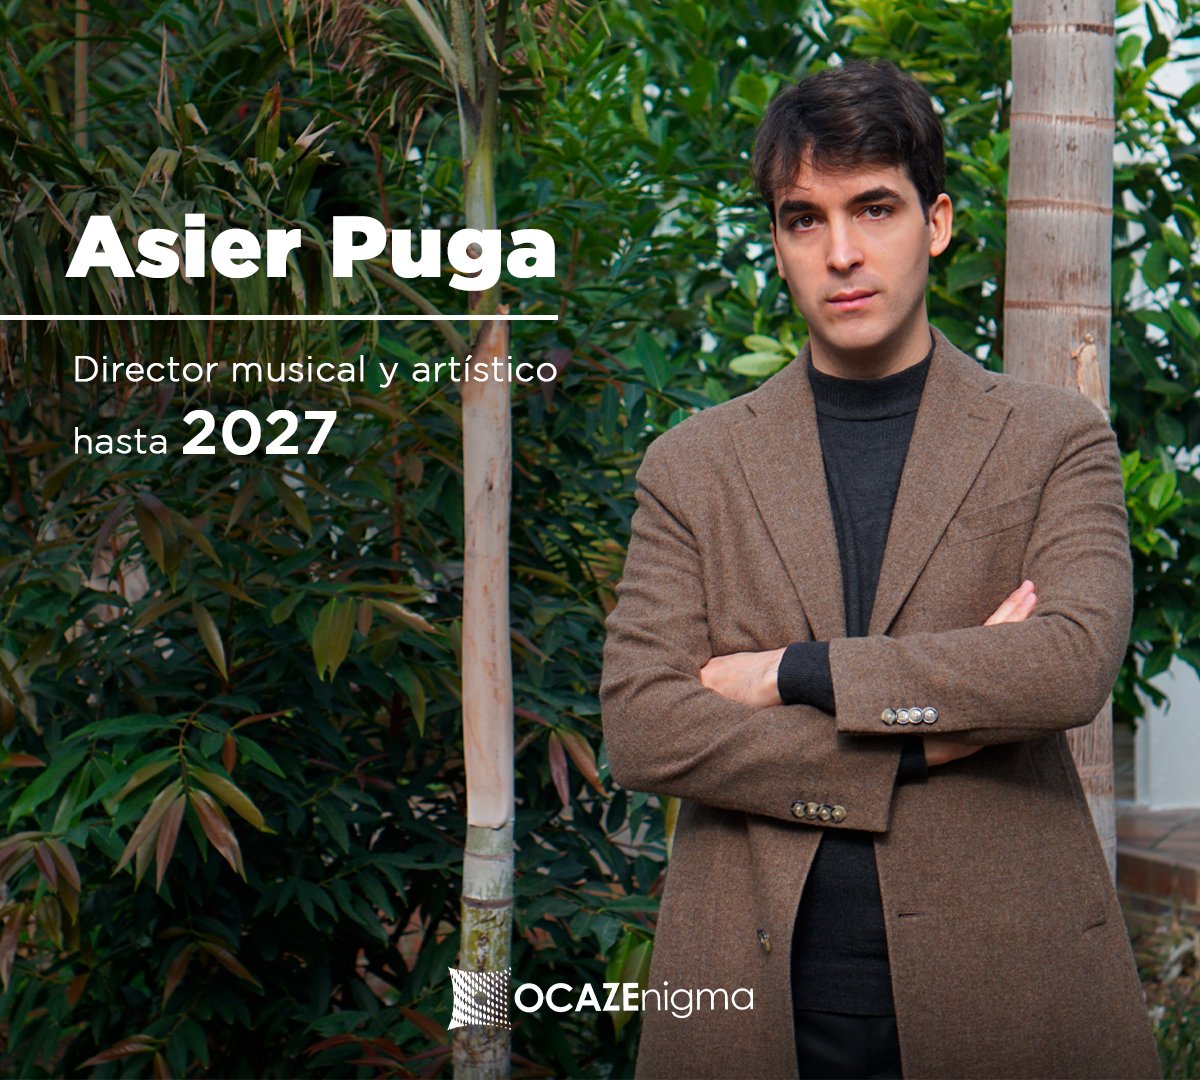 Desde la Orquesta de Cámara del Auditorio de Zaragoza - Grupo Enigma nos complace anunciar que Asier Puga (@AsierPuga) amplía su contrato como director titular y artístico de nuestra agrupación por 4 temporadas más hasta 2027.